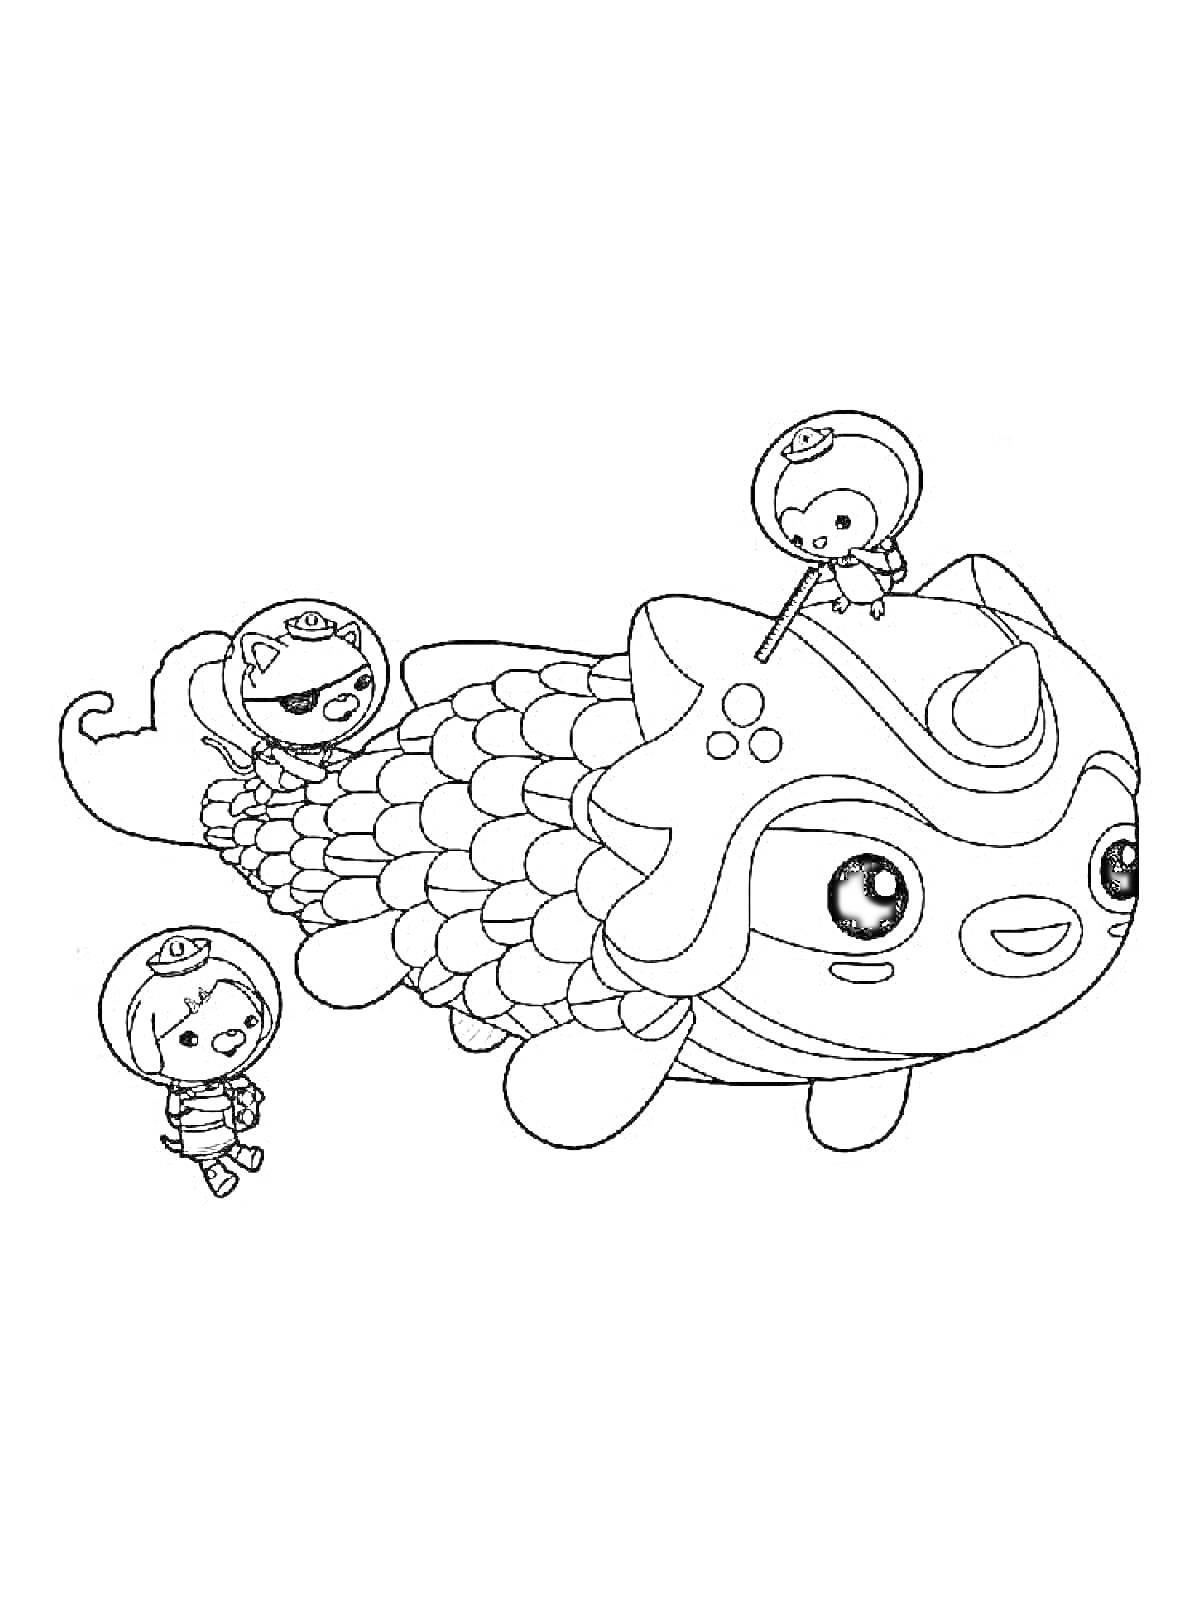 Раскраска Октонафты с большими рыбами и персонажами в скафандрах